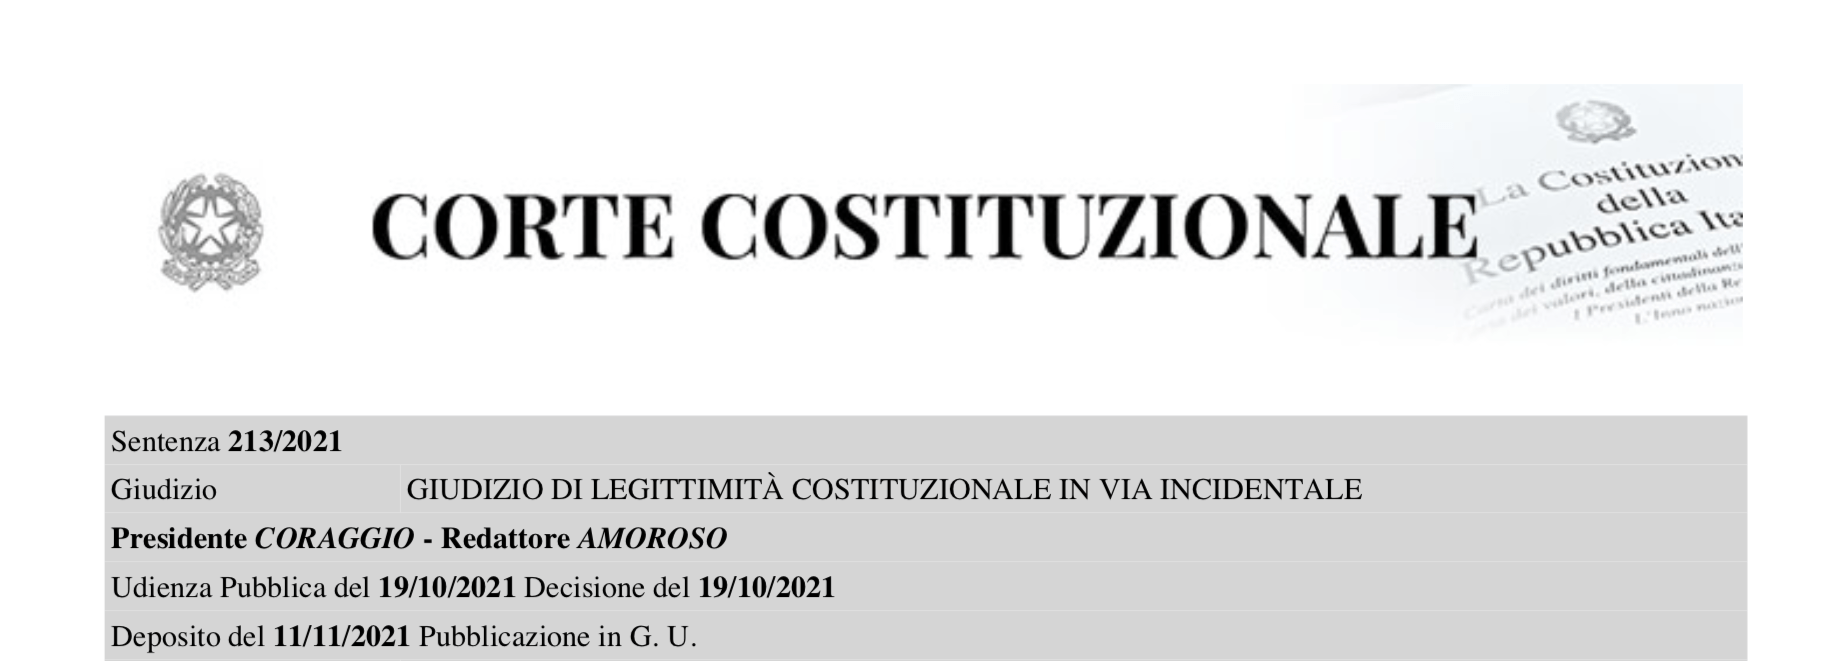 www.databaseitalia.it